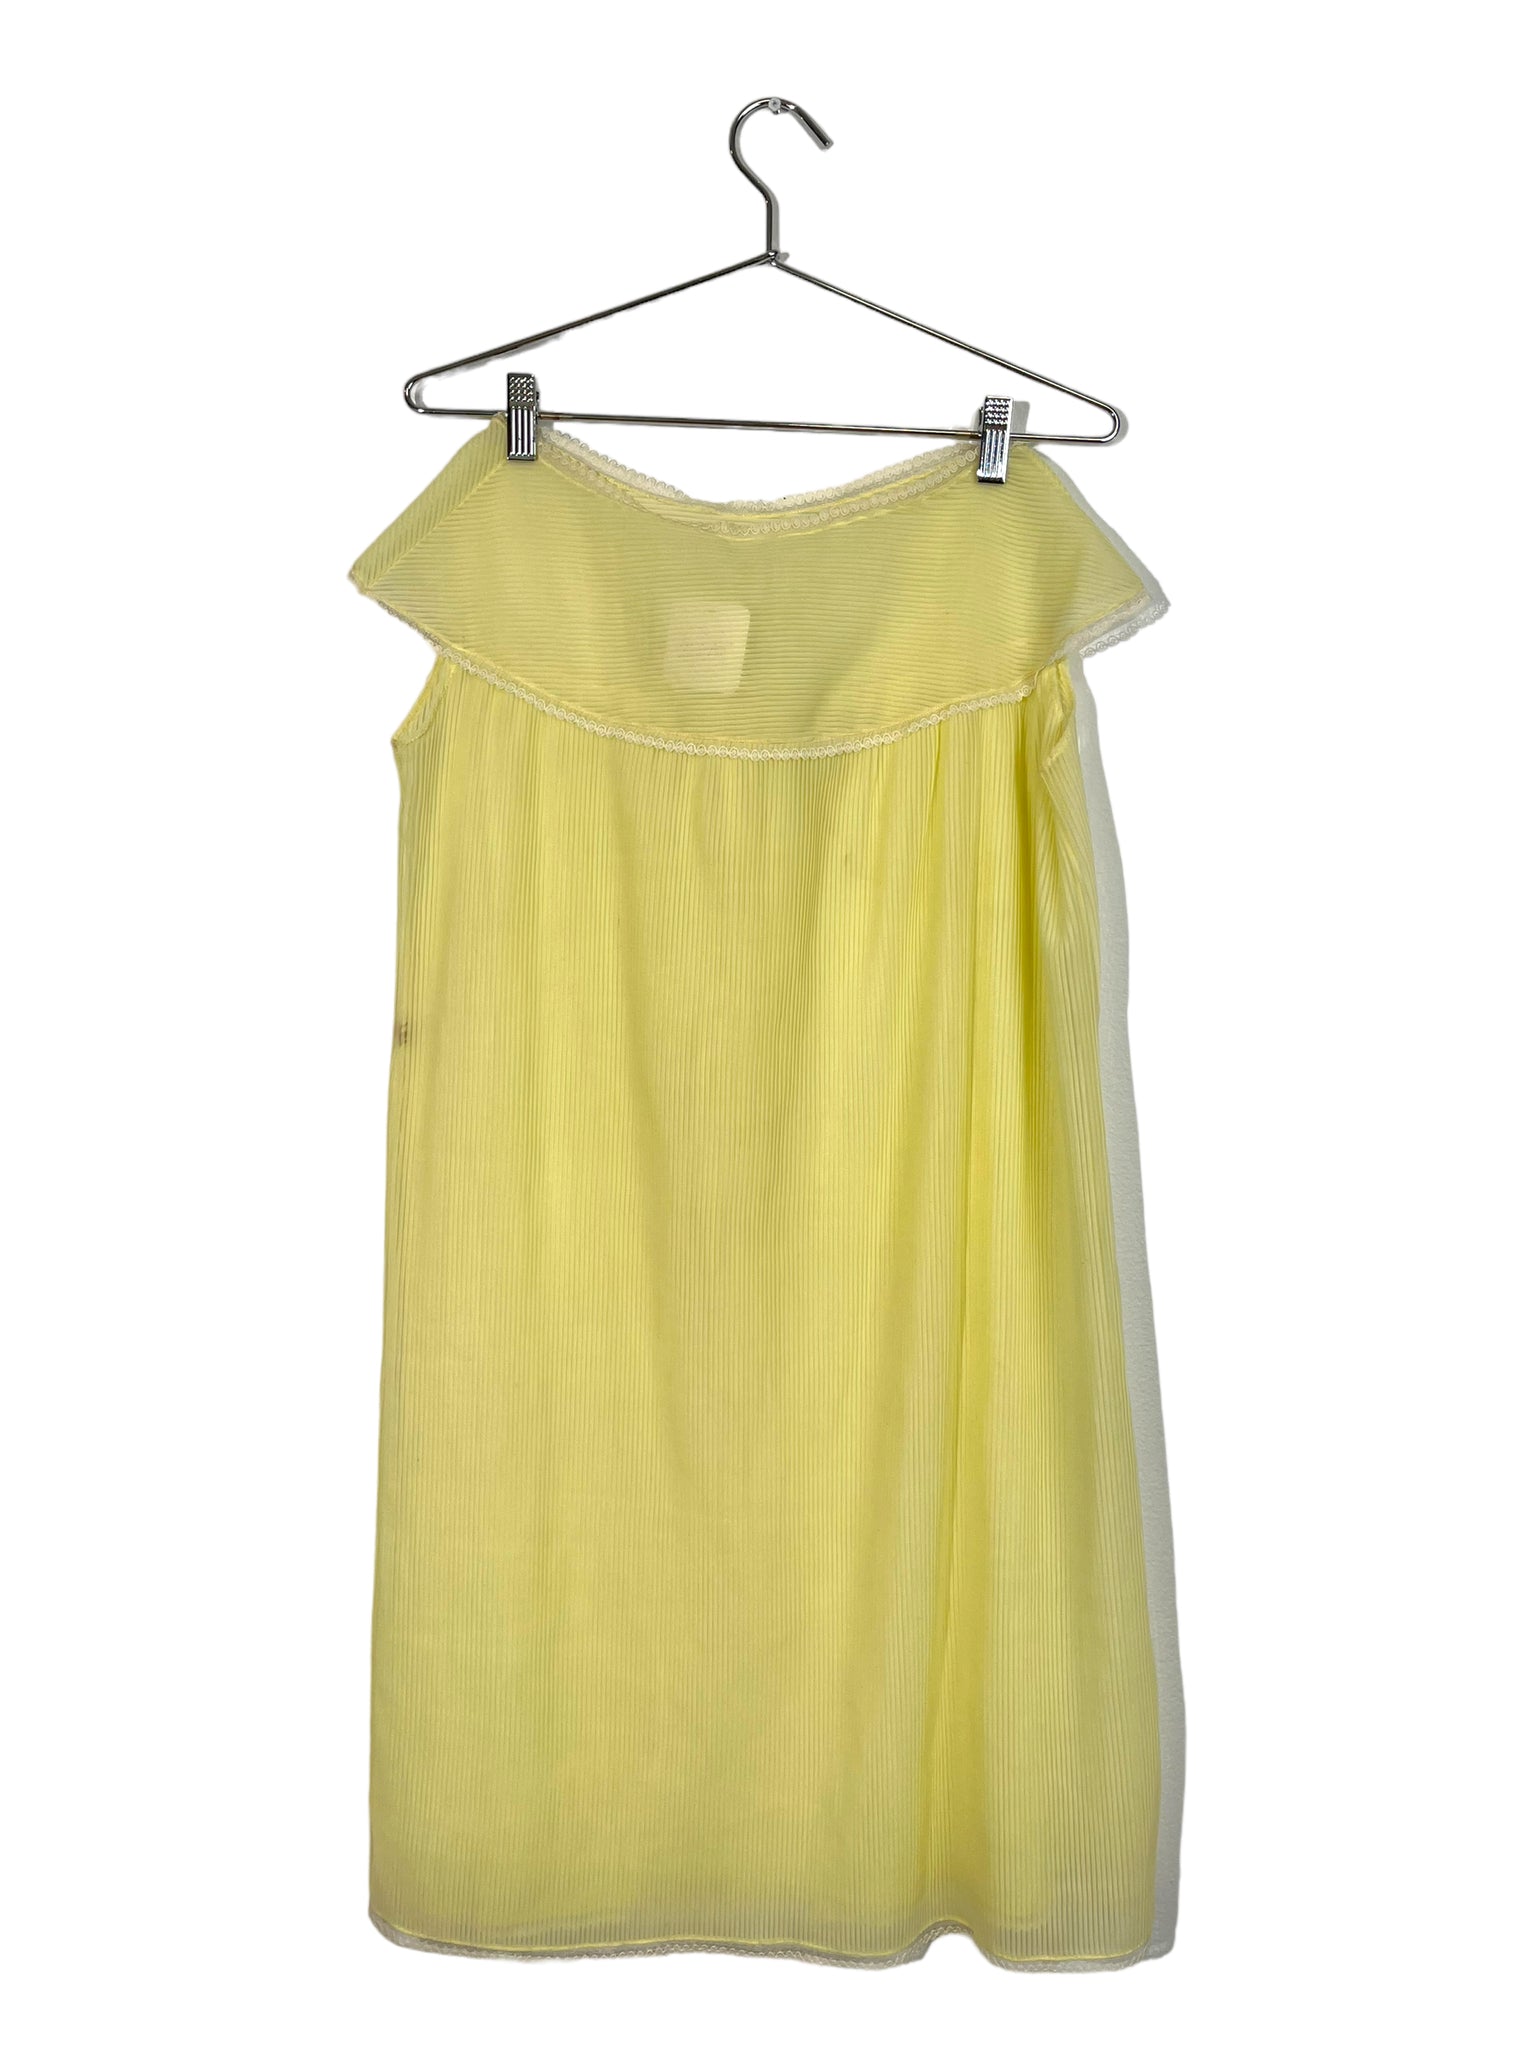 Sheer Pastel Yellow Dress